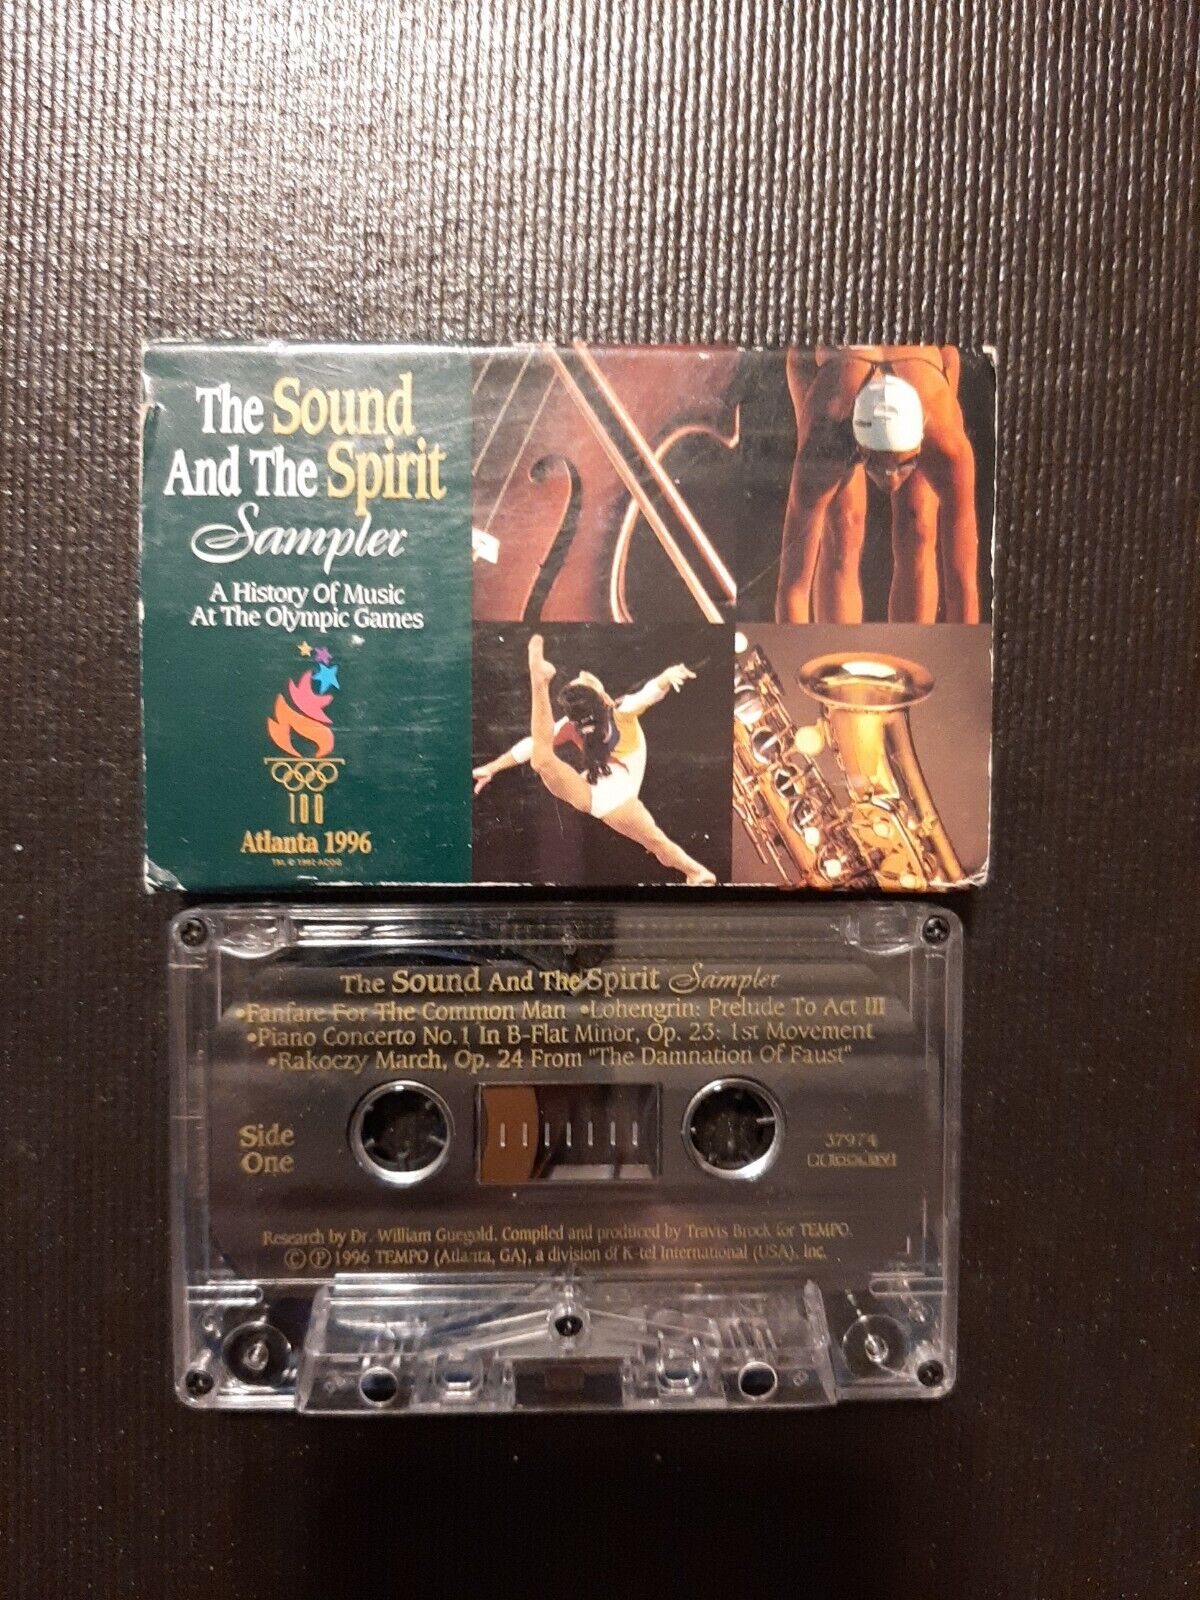  The Sound And The Spirit Sampler  Olympics Music Cassette Tape Atlanta 1996